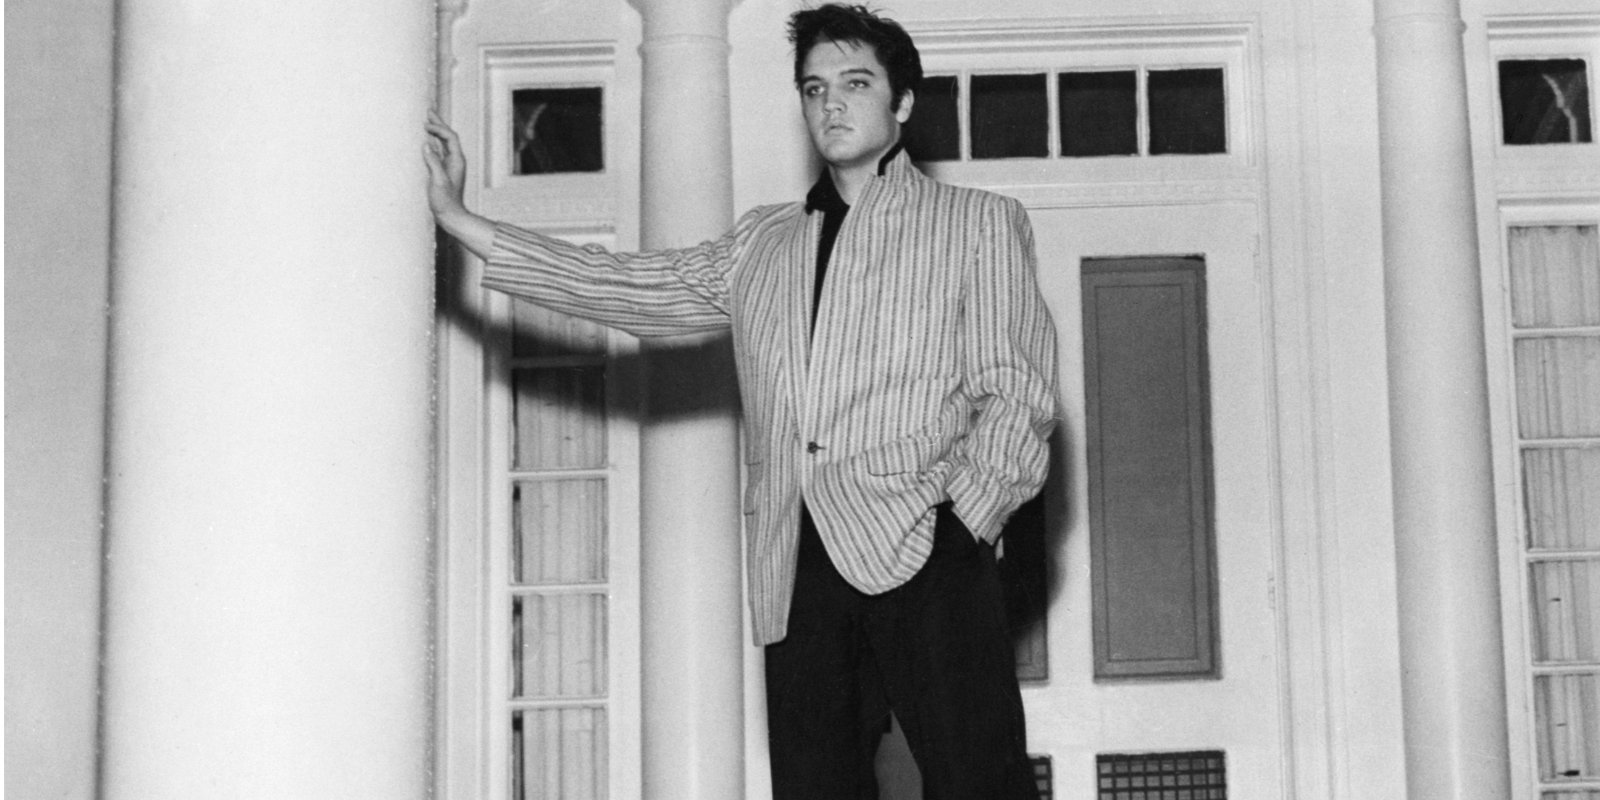 Elvis Presley: ห้อง Graceland อันเป็นที่รักนี้แต่เดิมไม่ได้เป็นส่วนหนึ่งของทัวร์ เหตุผลที่น่าแปลกใจว่าทำไม